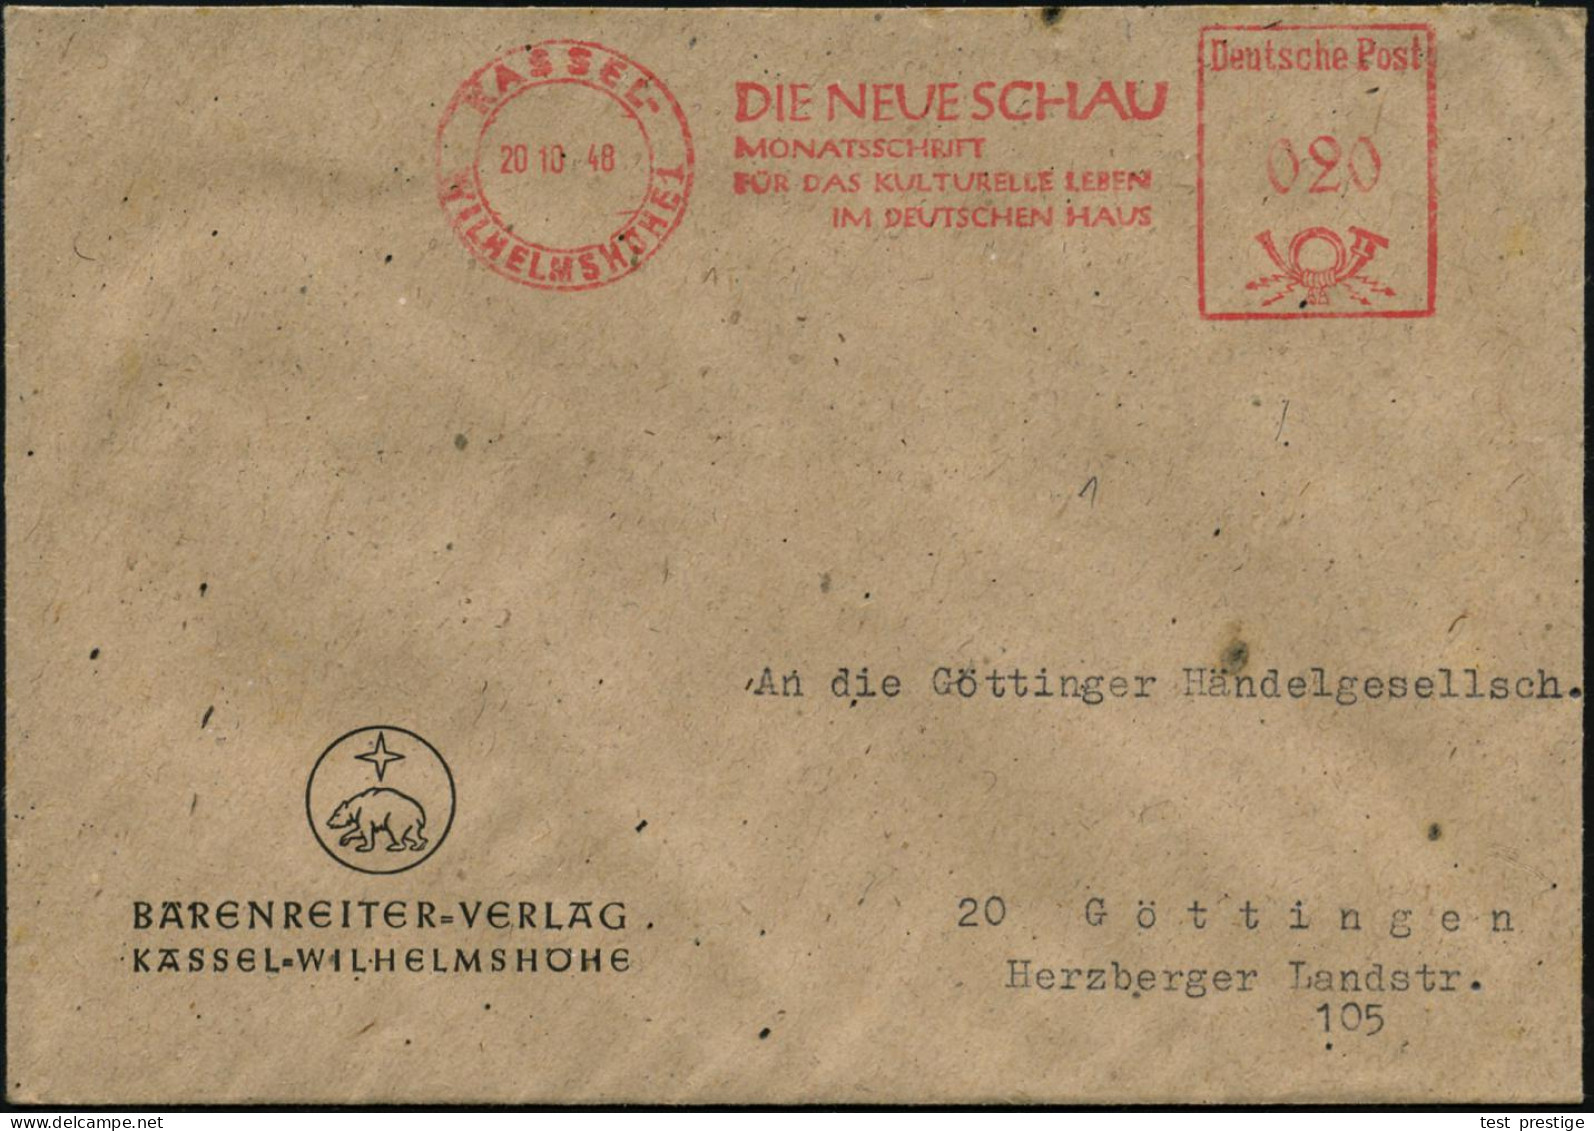 KASSEL-/ WILHELMSHÖHE 1/ DIE NEUE SCHAUMONATSZEITSCHRIFT... 1948 (20.10.) AFS Francotyp "Posthorn - Deutsche Post" Auf F - Musique